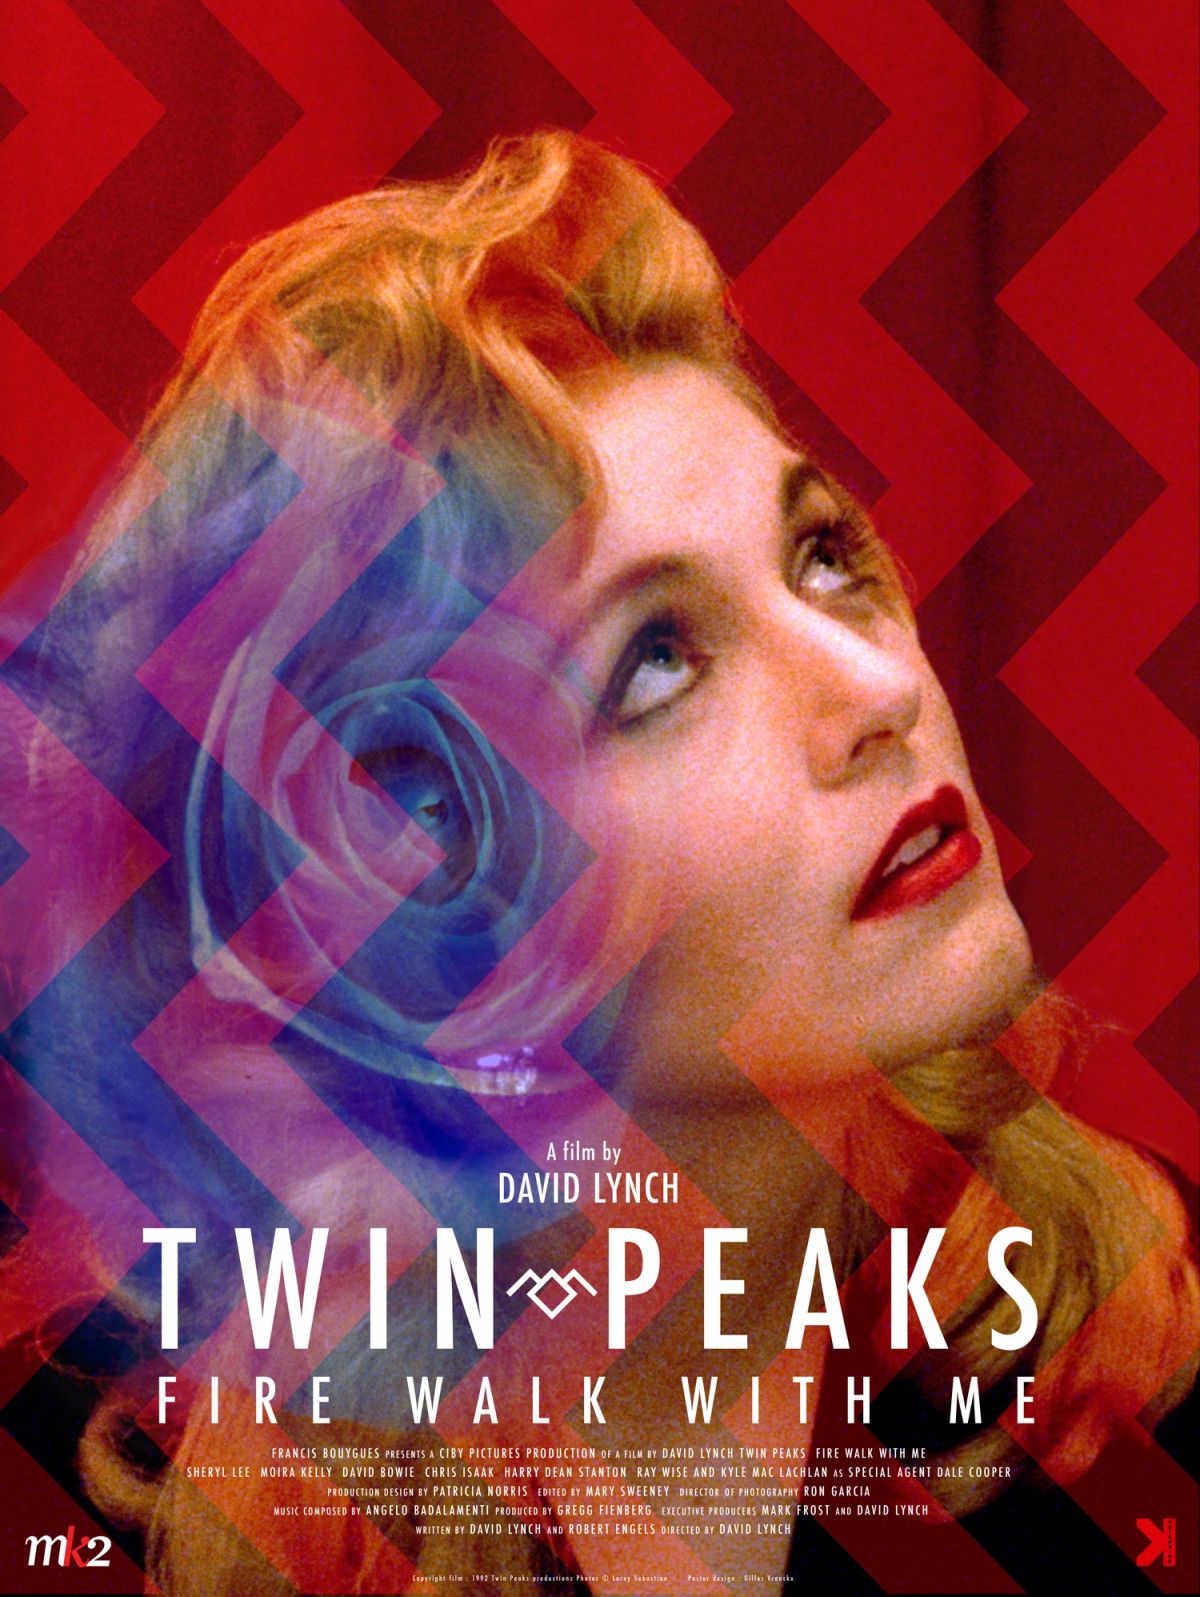 Twin Peaks- Fire Walk with me en copie restaurée 